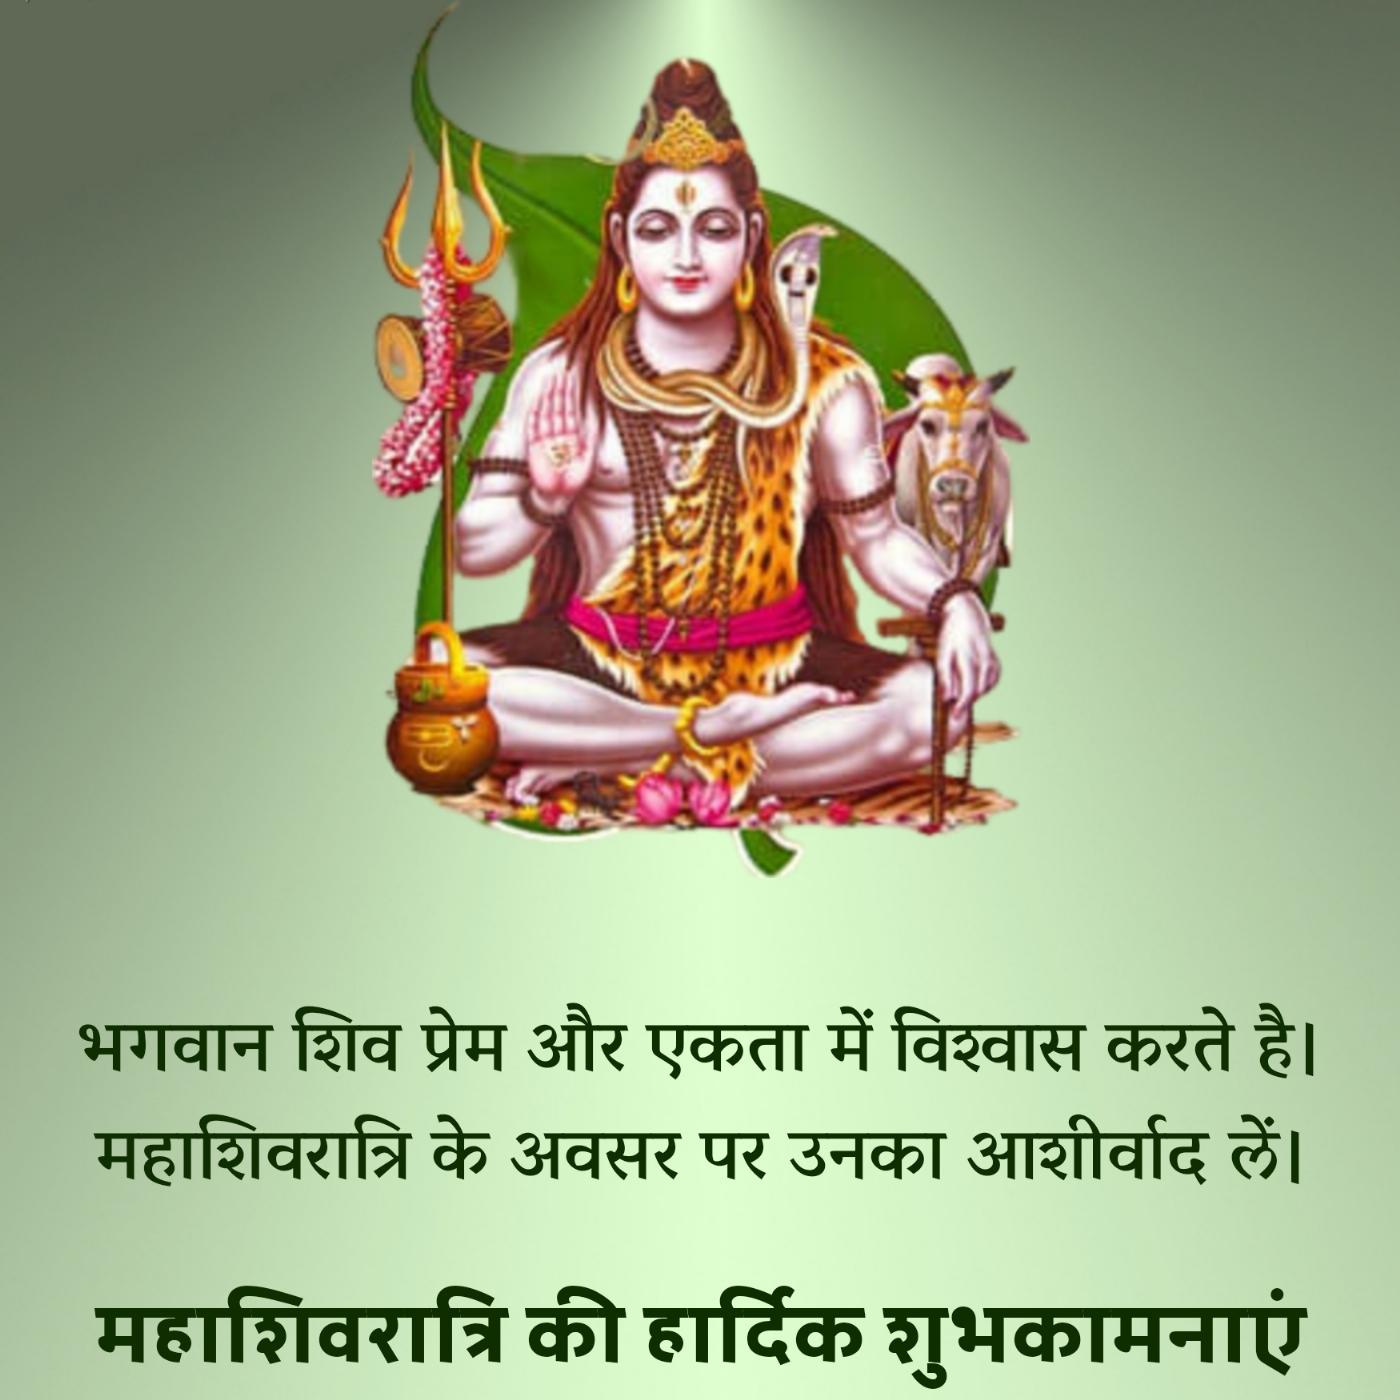 भगवान शिव प्रेम और एकता में विश्वास करते हैं